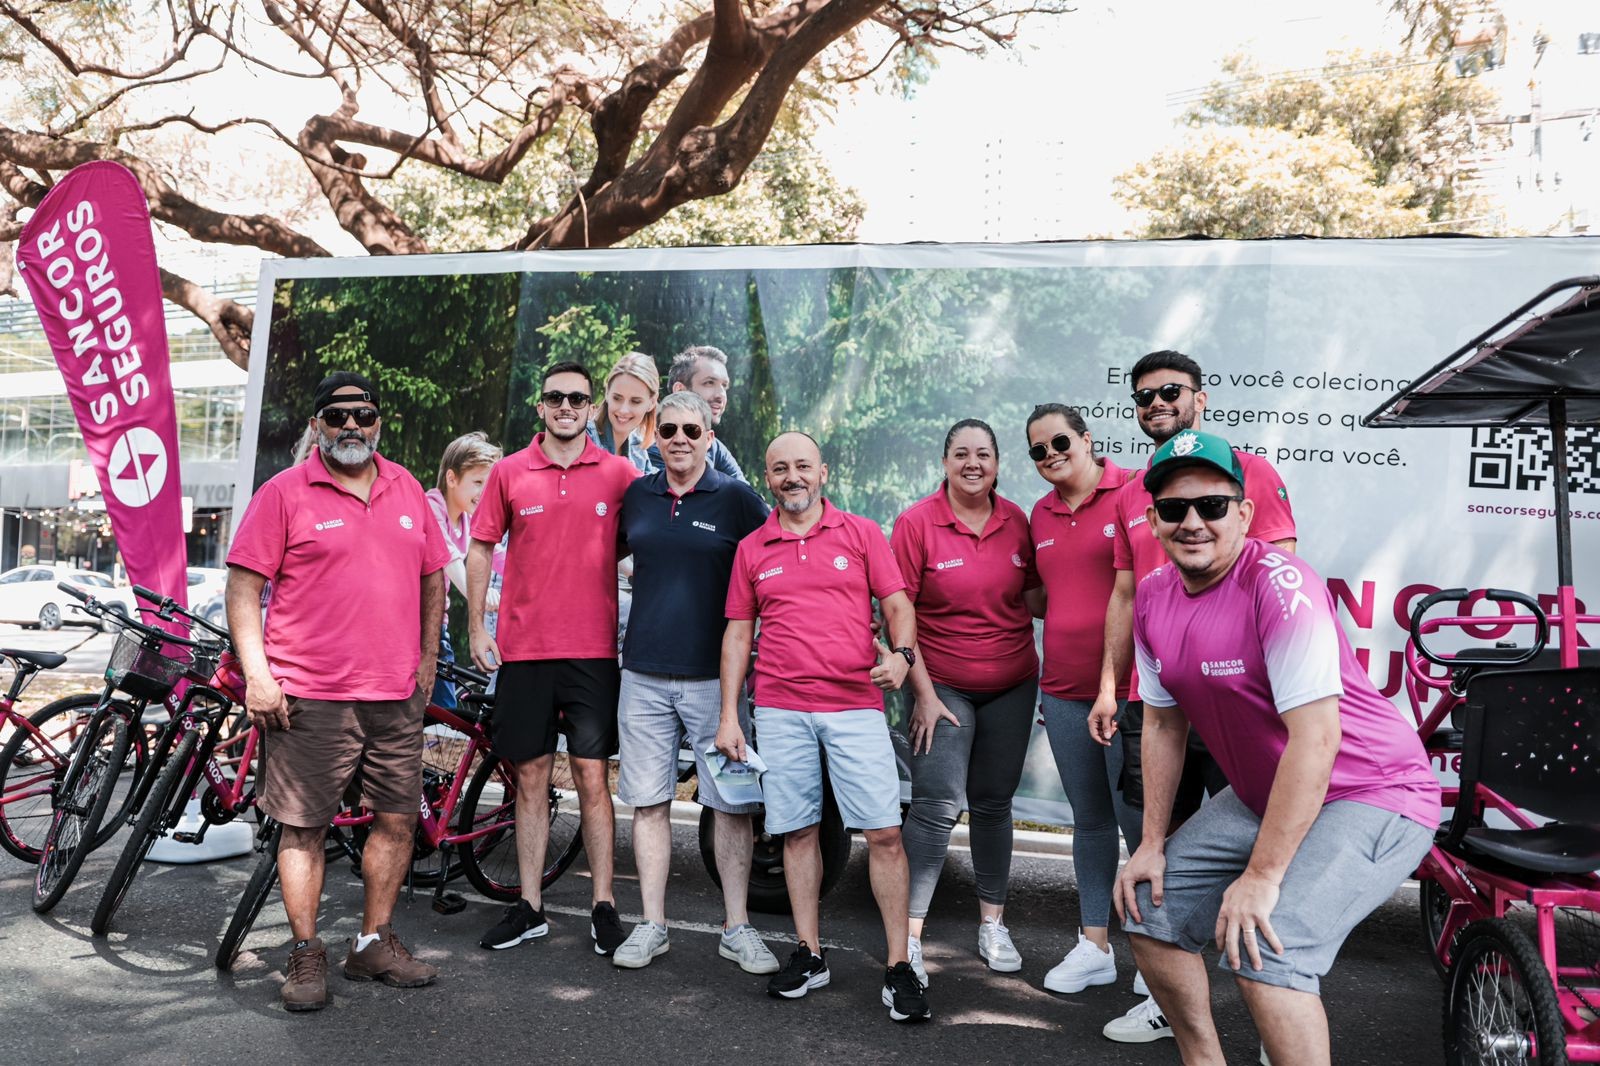 Sancor Seguros Brasil lança Projeto Bike no Parque para promover saúde e bem-estar em Maringá (PR)